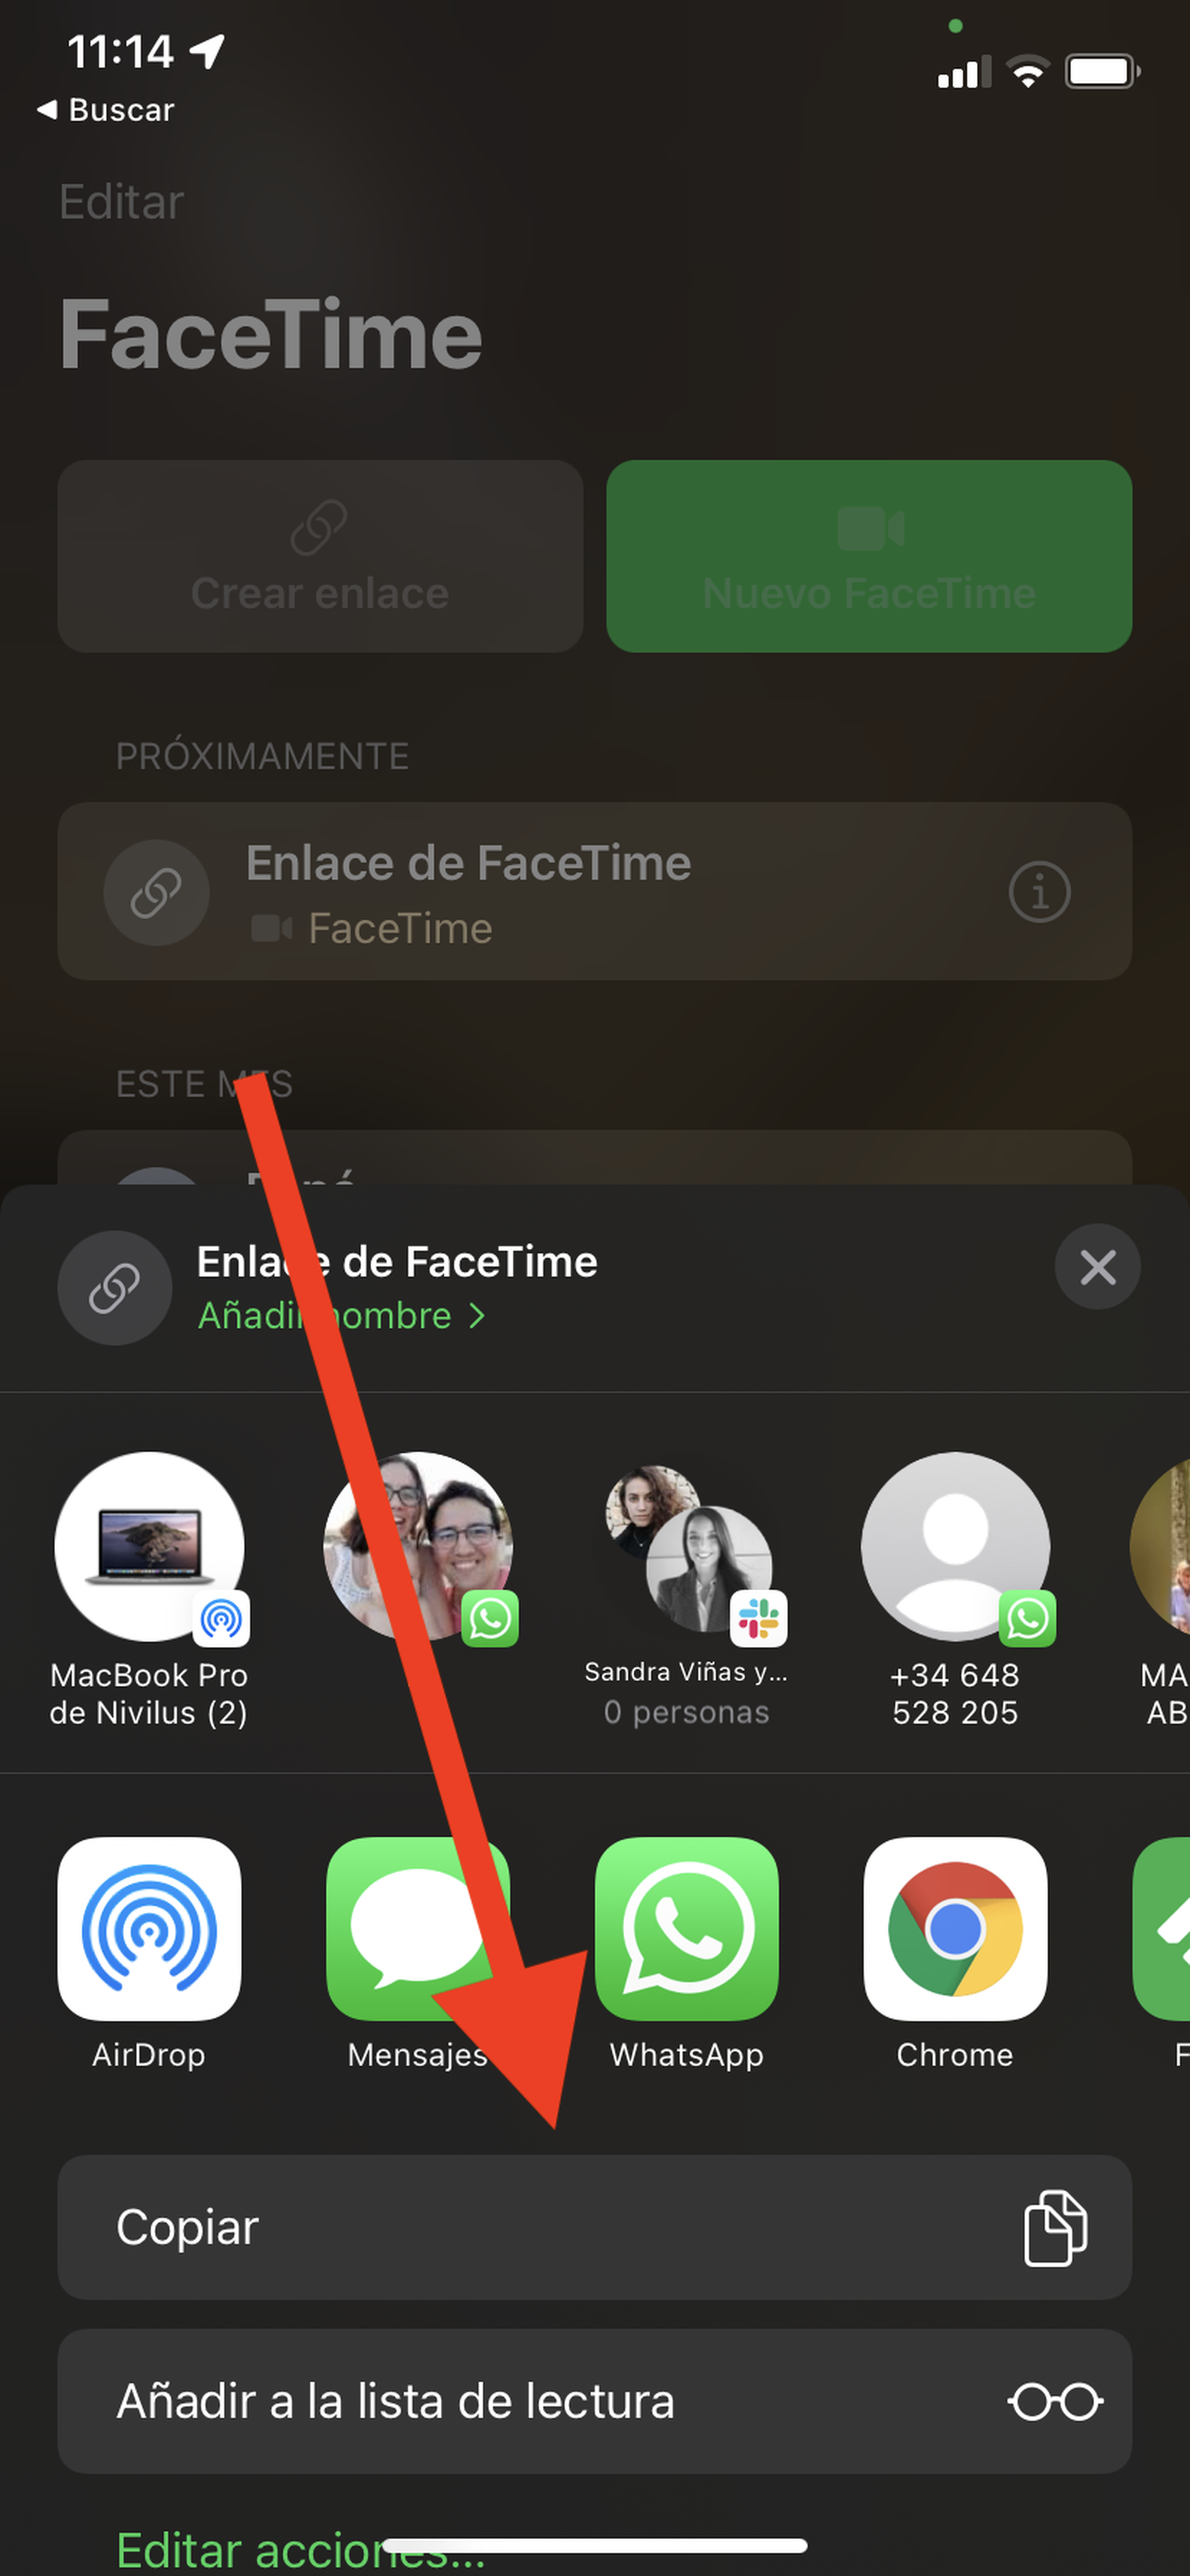 Cómo hacer una llamada de FaceTime con usuarios de Android o Windows